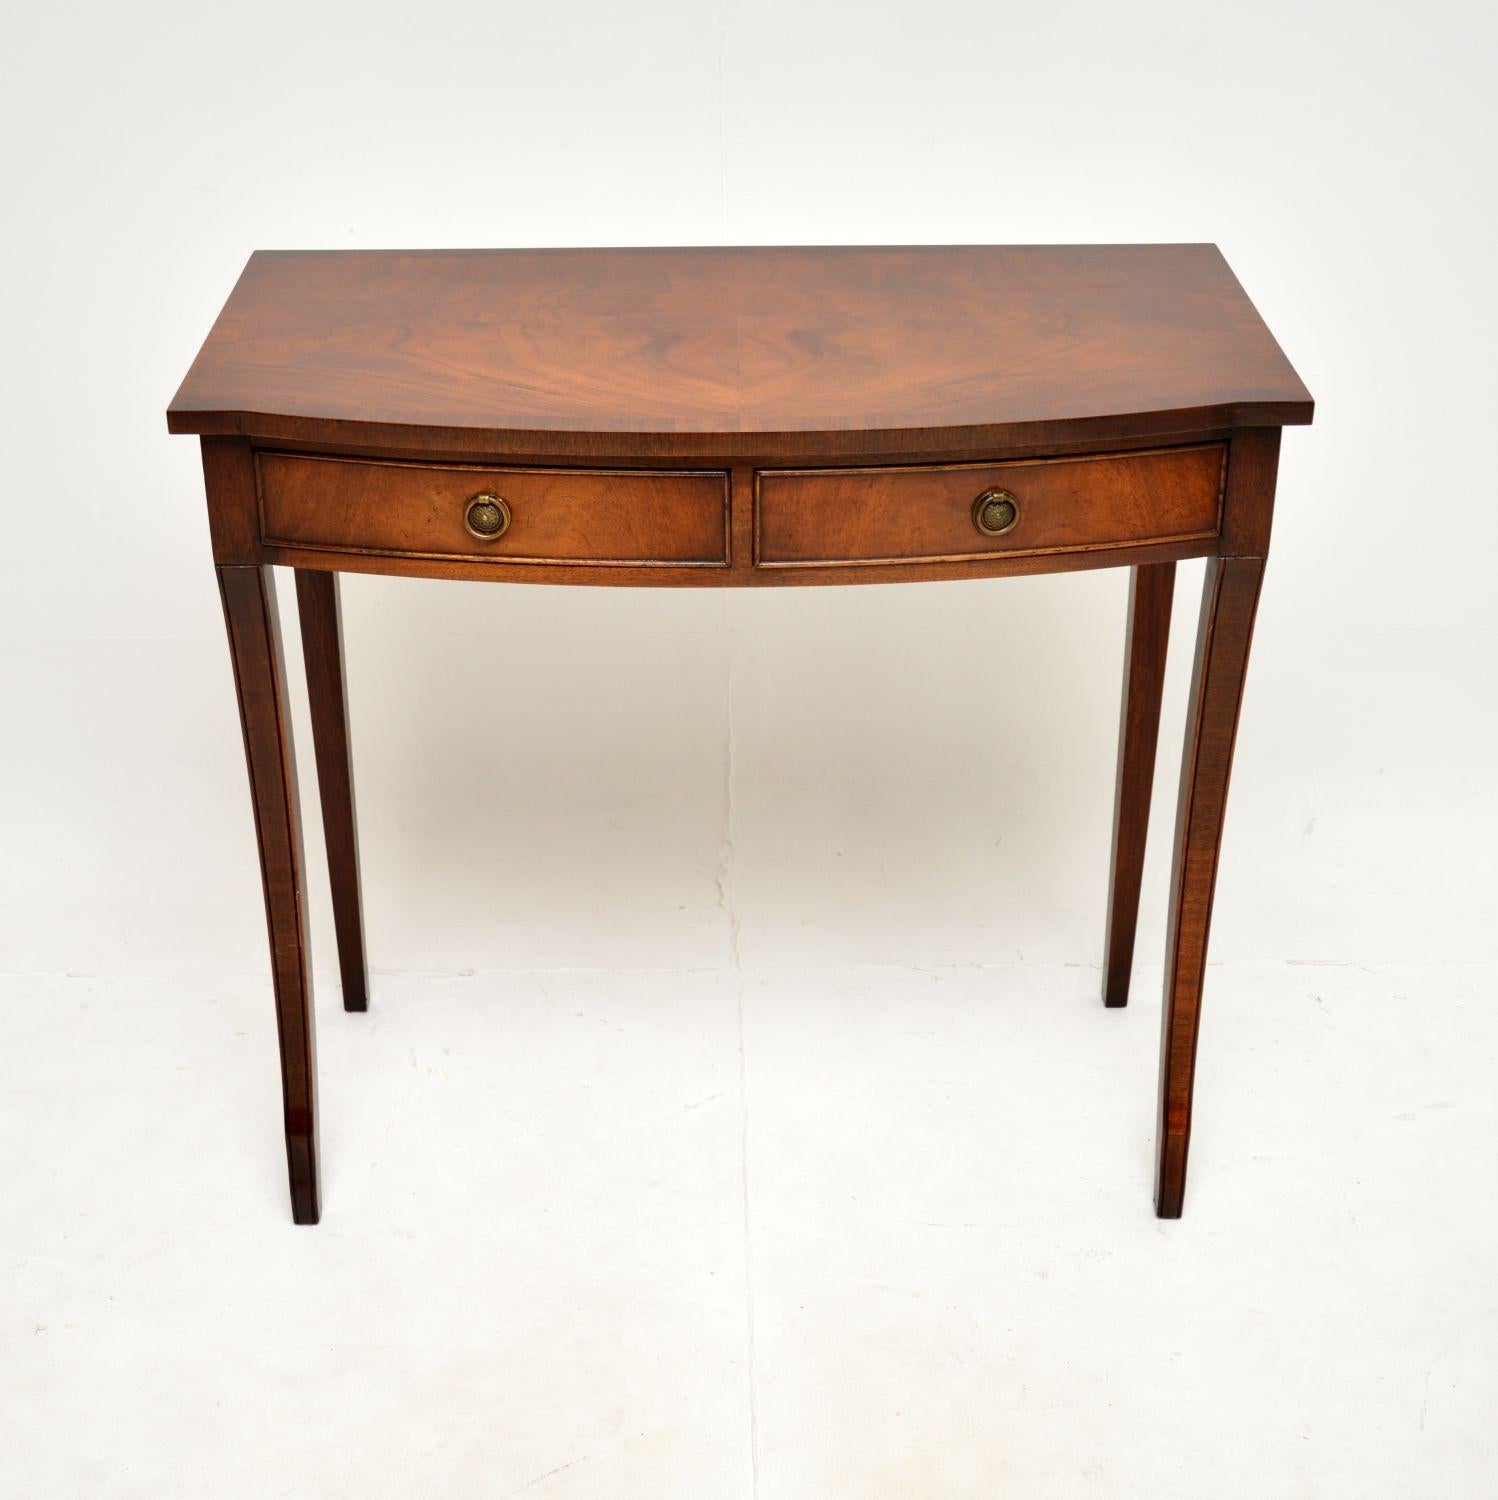 Une élégante table console ancienne de style Regency, très bien réalisée. Il a été fabriqué en Angleterre, il date des années 1950 environ.

Cette table est d'une excellente qualité et d'une taille idéale pour être utilisée comme table console ou